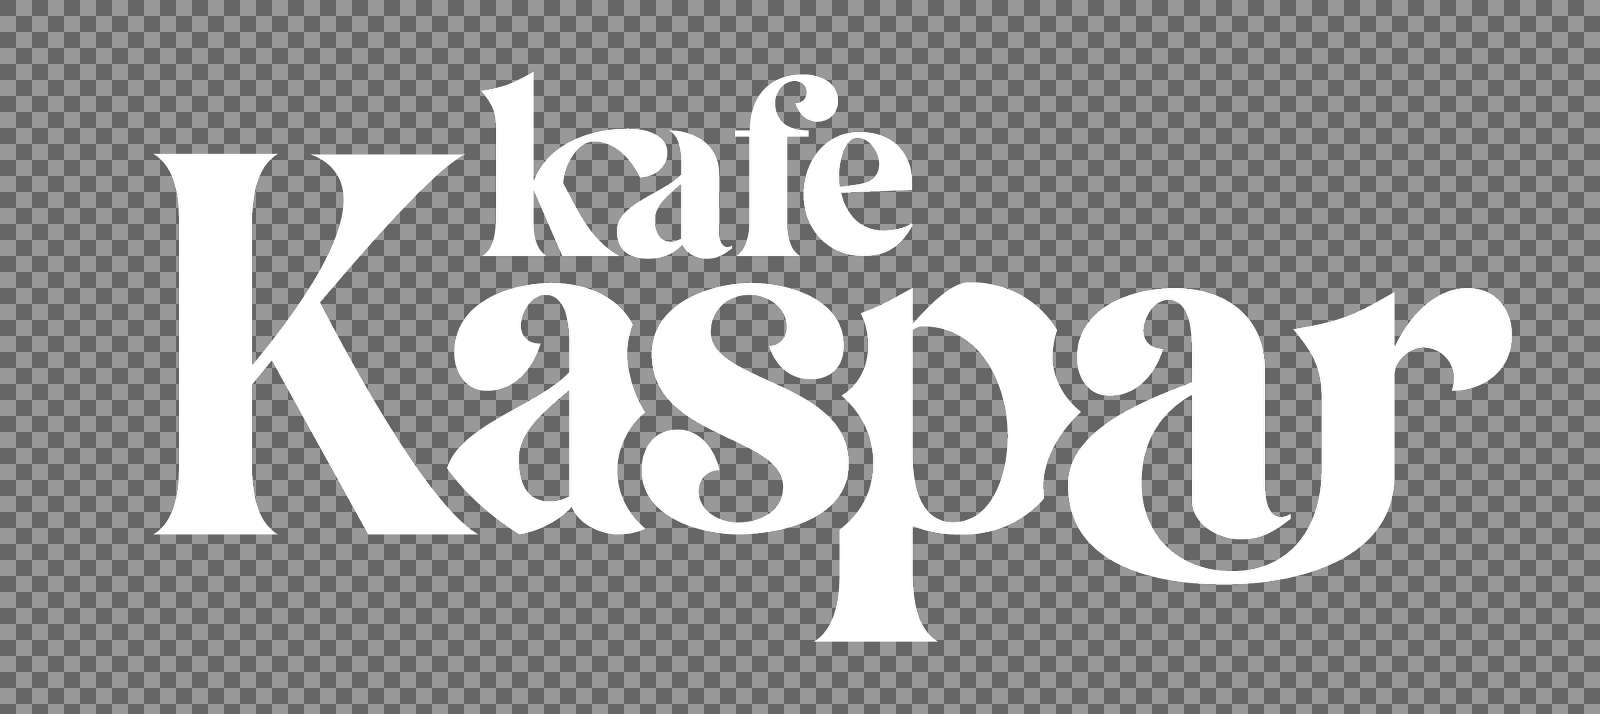 Kaspar Logo White